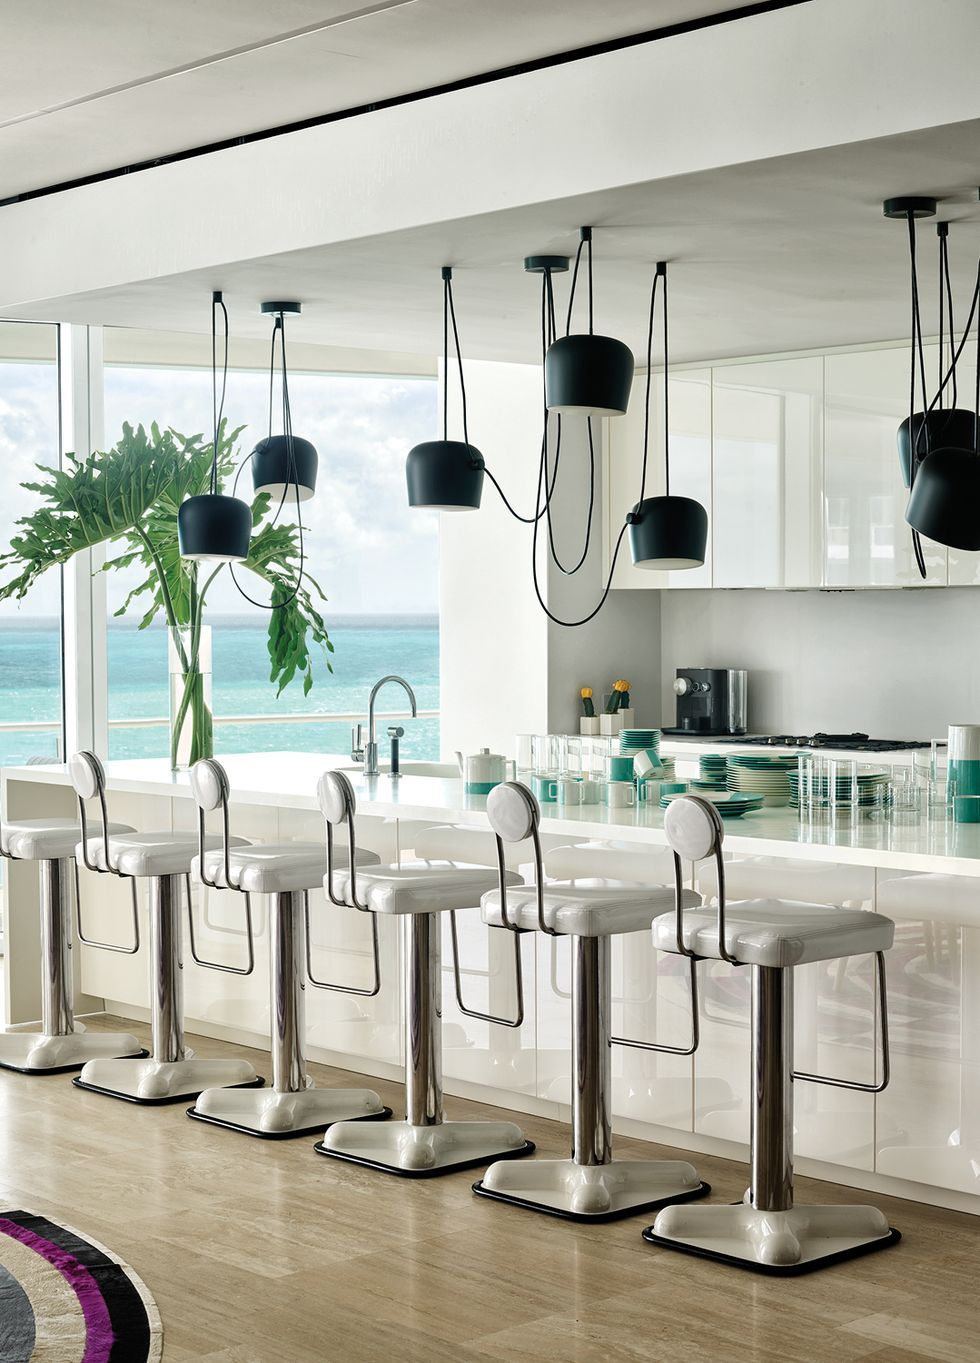 55+ Inspiring Modern Kitchens - Contemporary Kitchen Ideas 2020